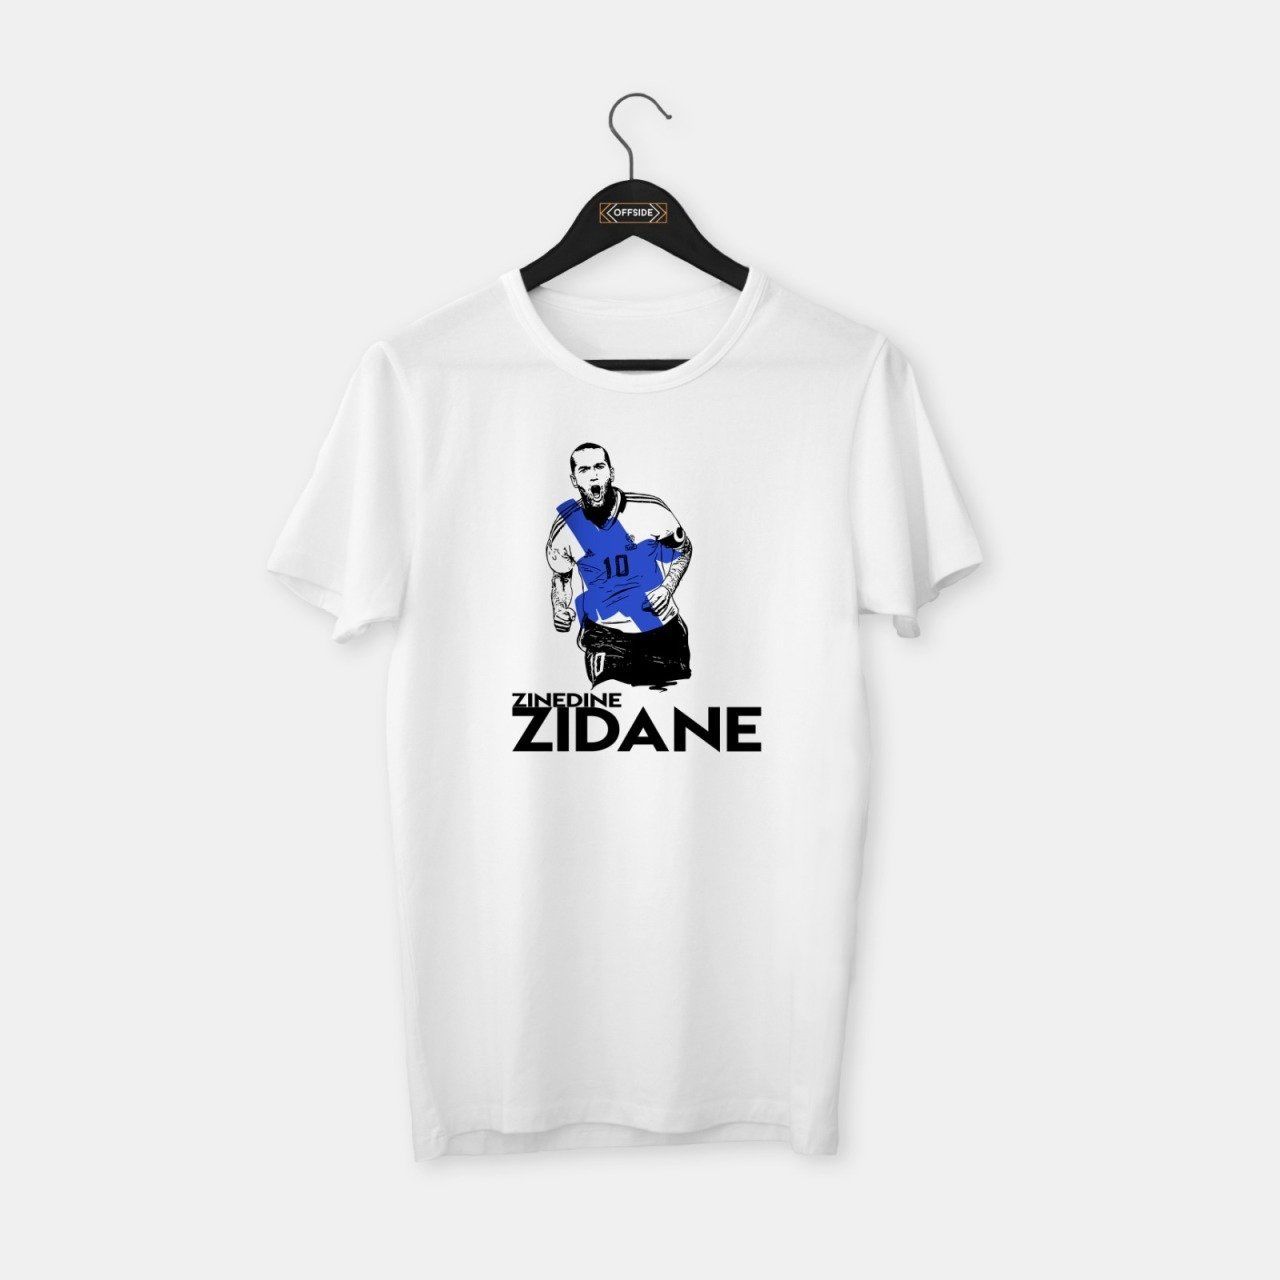 Zidane II T-shirt